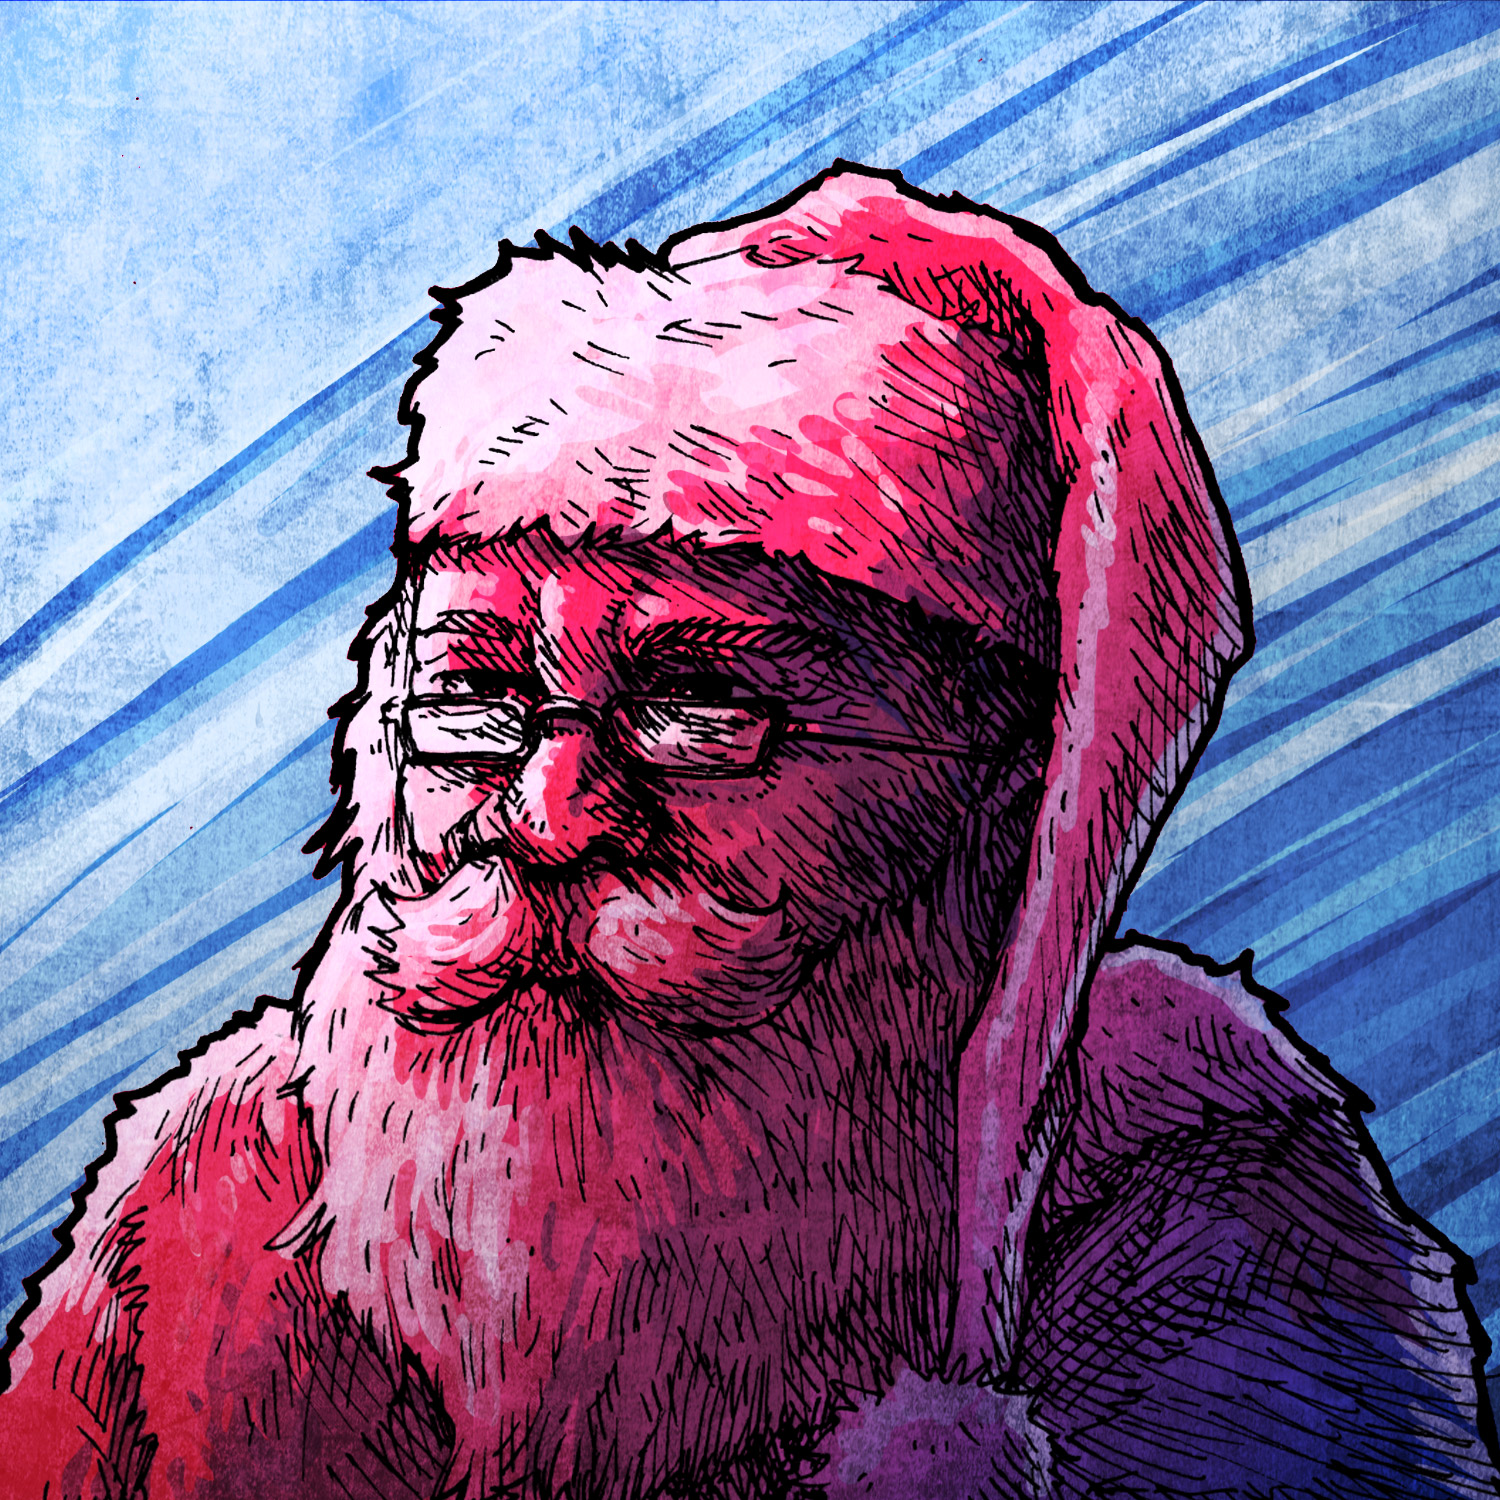 #02 - The Santa Claus 